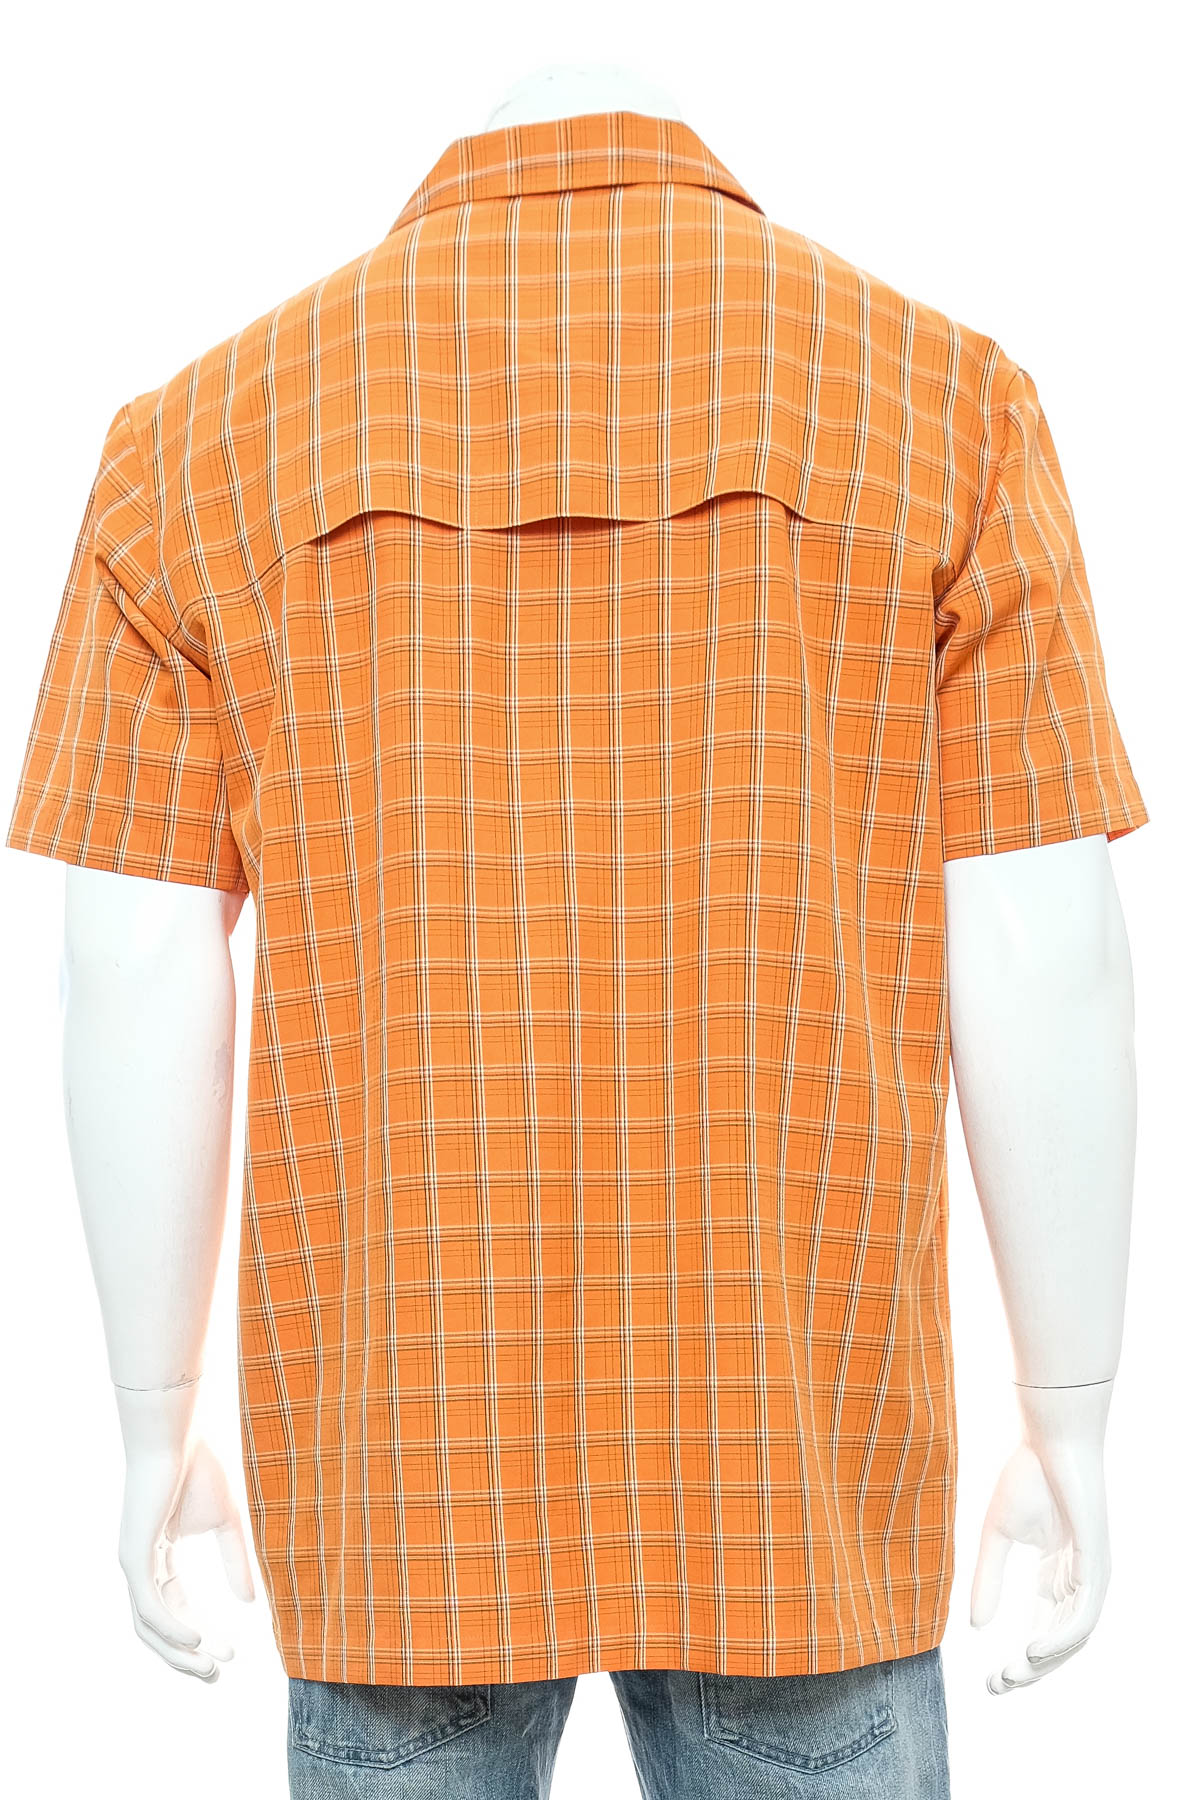 Men's shirt - Jack Wolfskin - 1